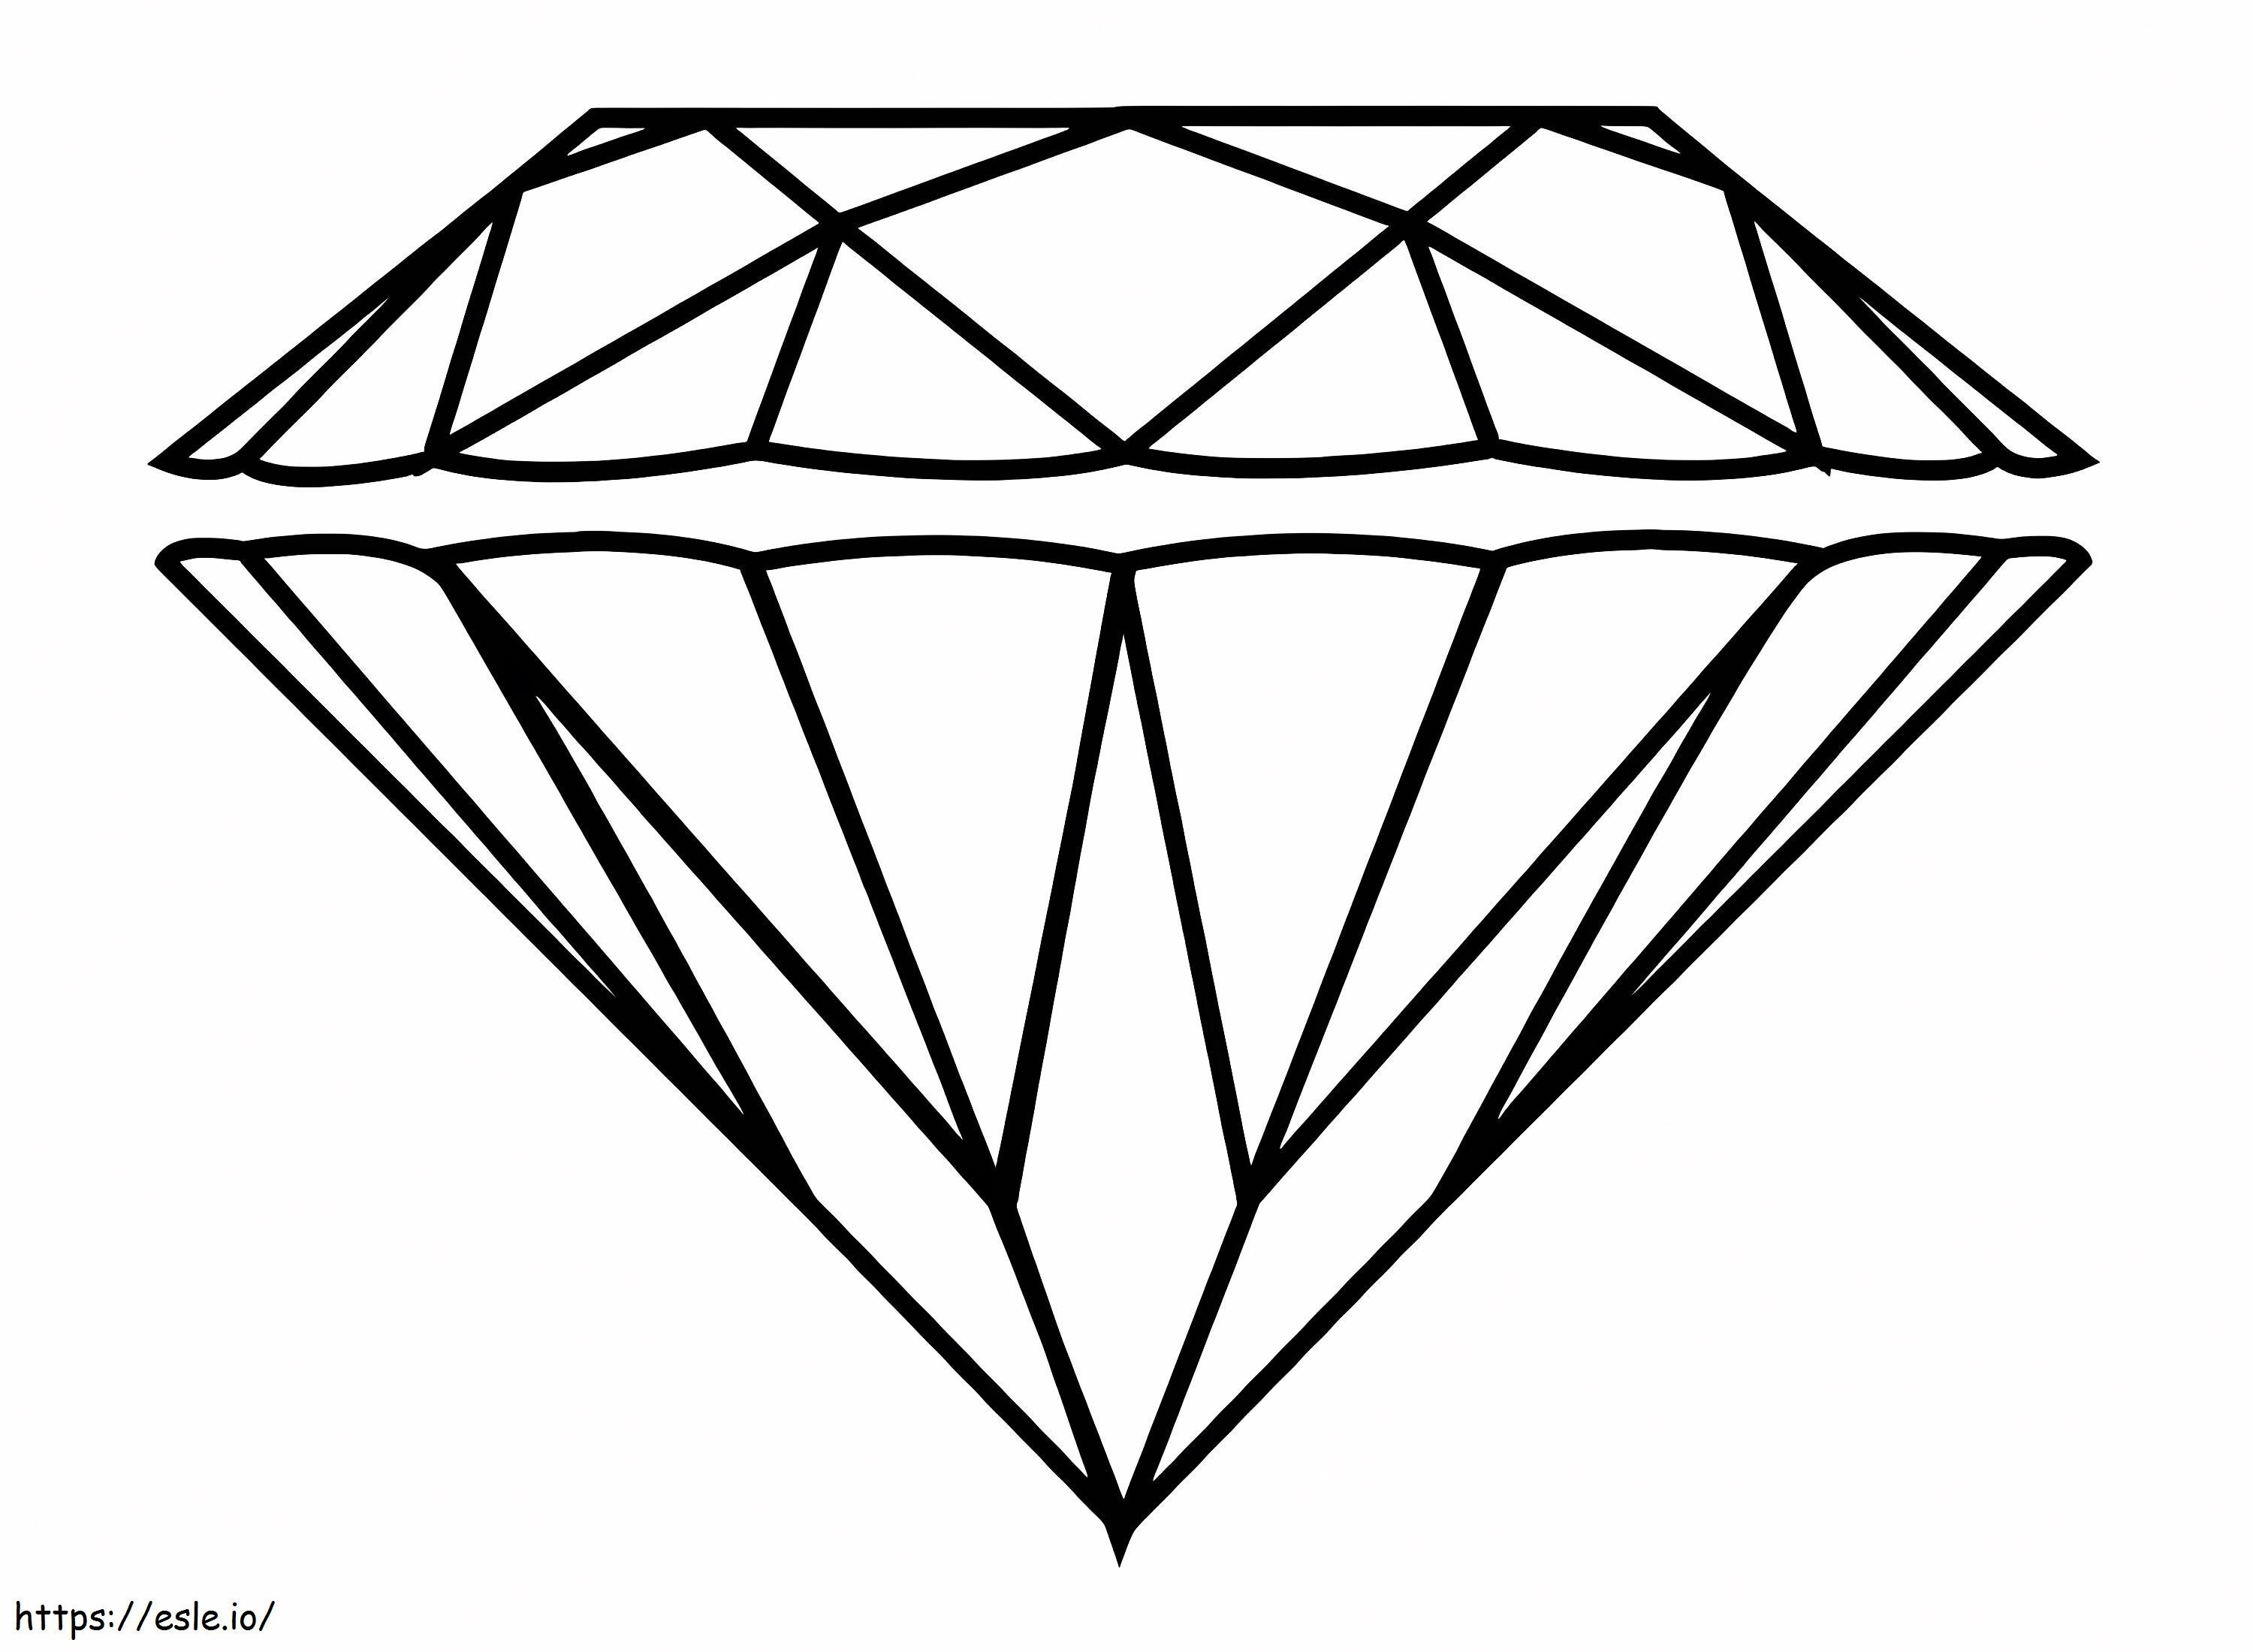 Coloriage Diamant gratuit à imprimer dessin